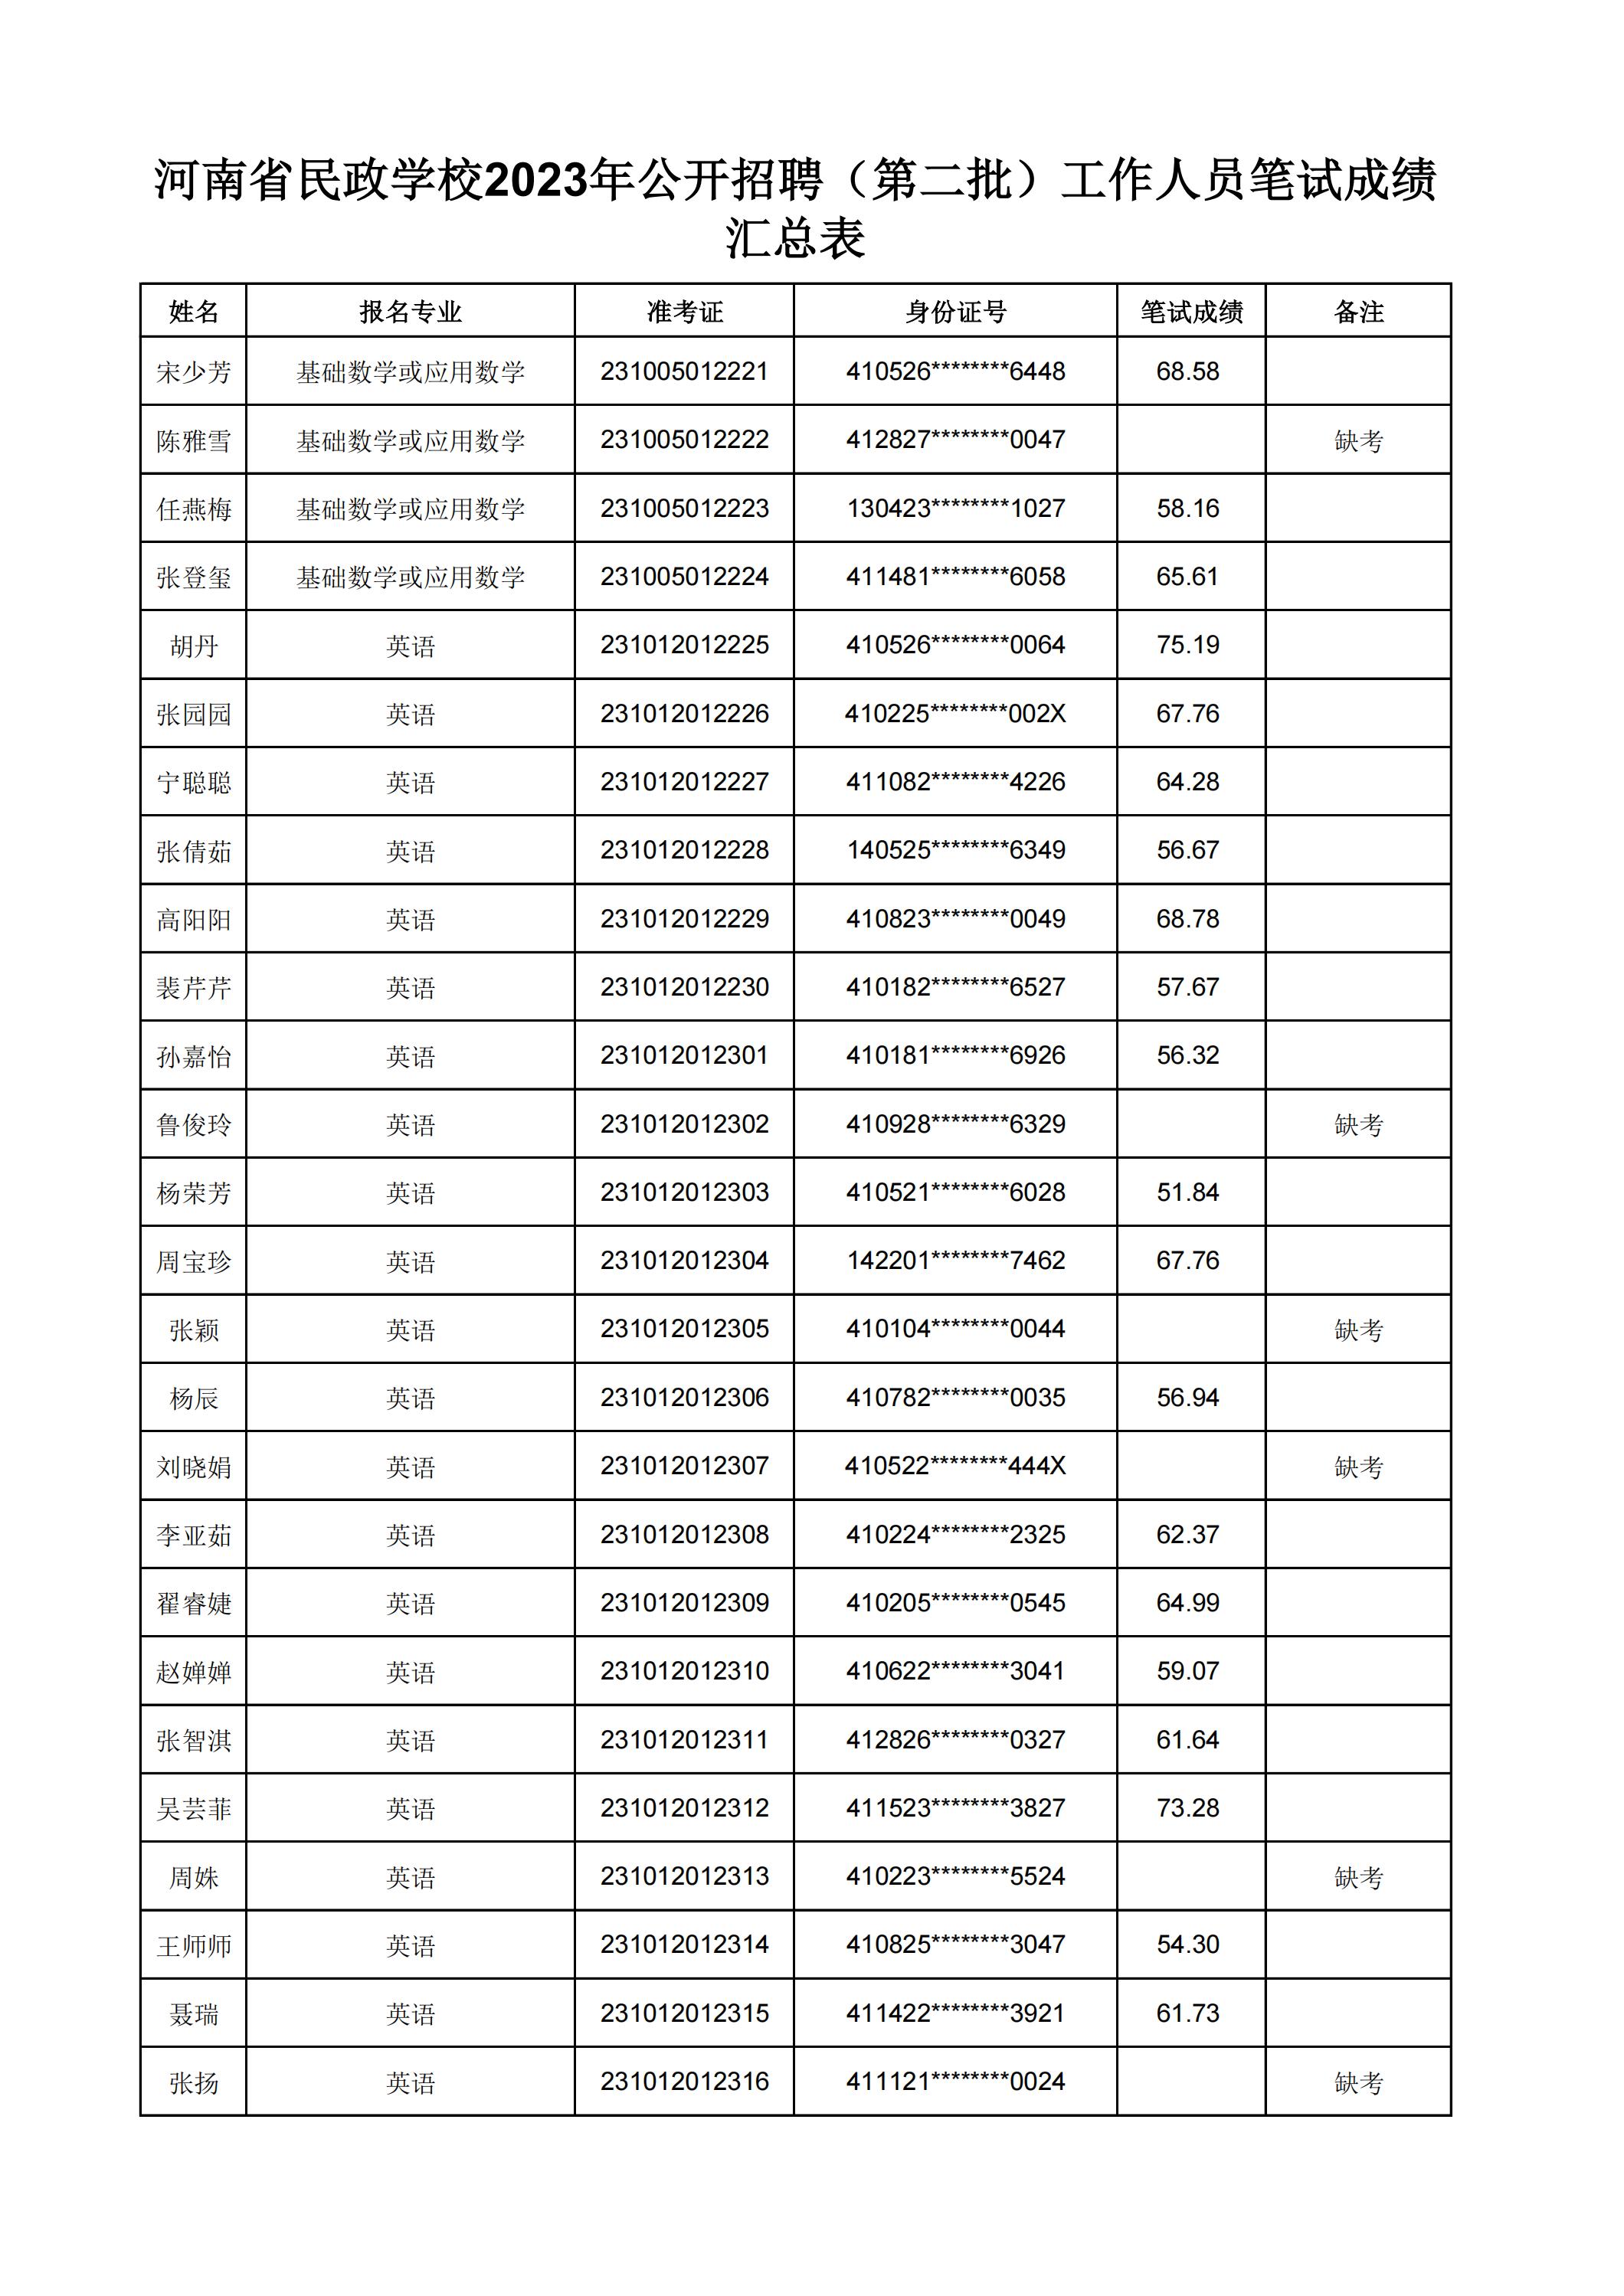 河南省民政学校2023年公开招聘（第二批）工作人员笔试成绩汇总表(2)_25.jpg